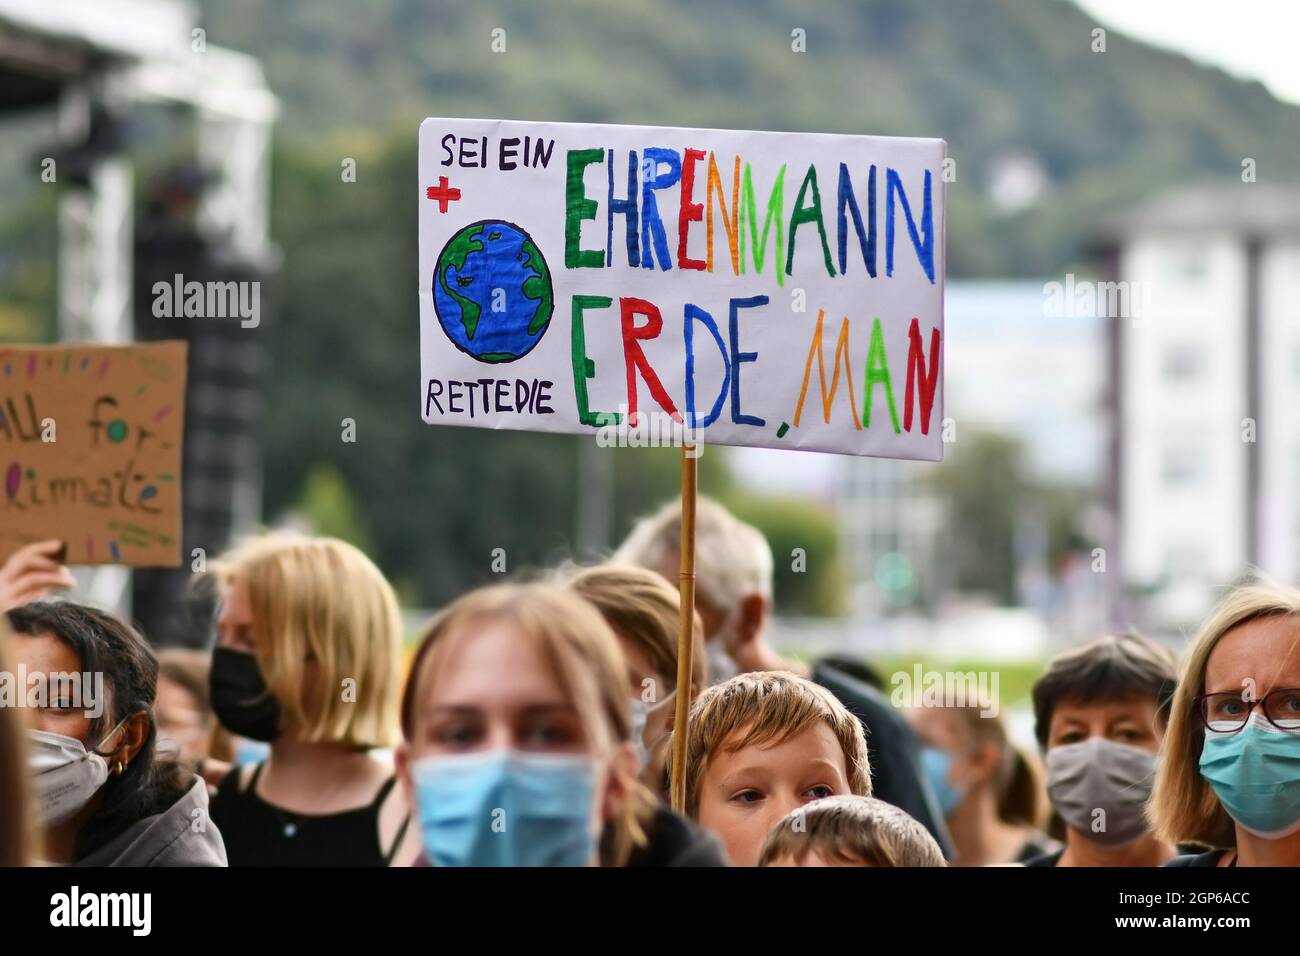 Heidelberg, Deutschland - 24. September 2021: Schild mit der Aufschrift "sei ein Gentleman, rette die Erde" auf Deutsch bei der Global Climate Strike Demonstration Stockfoto